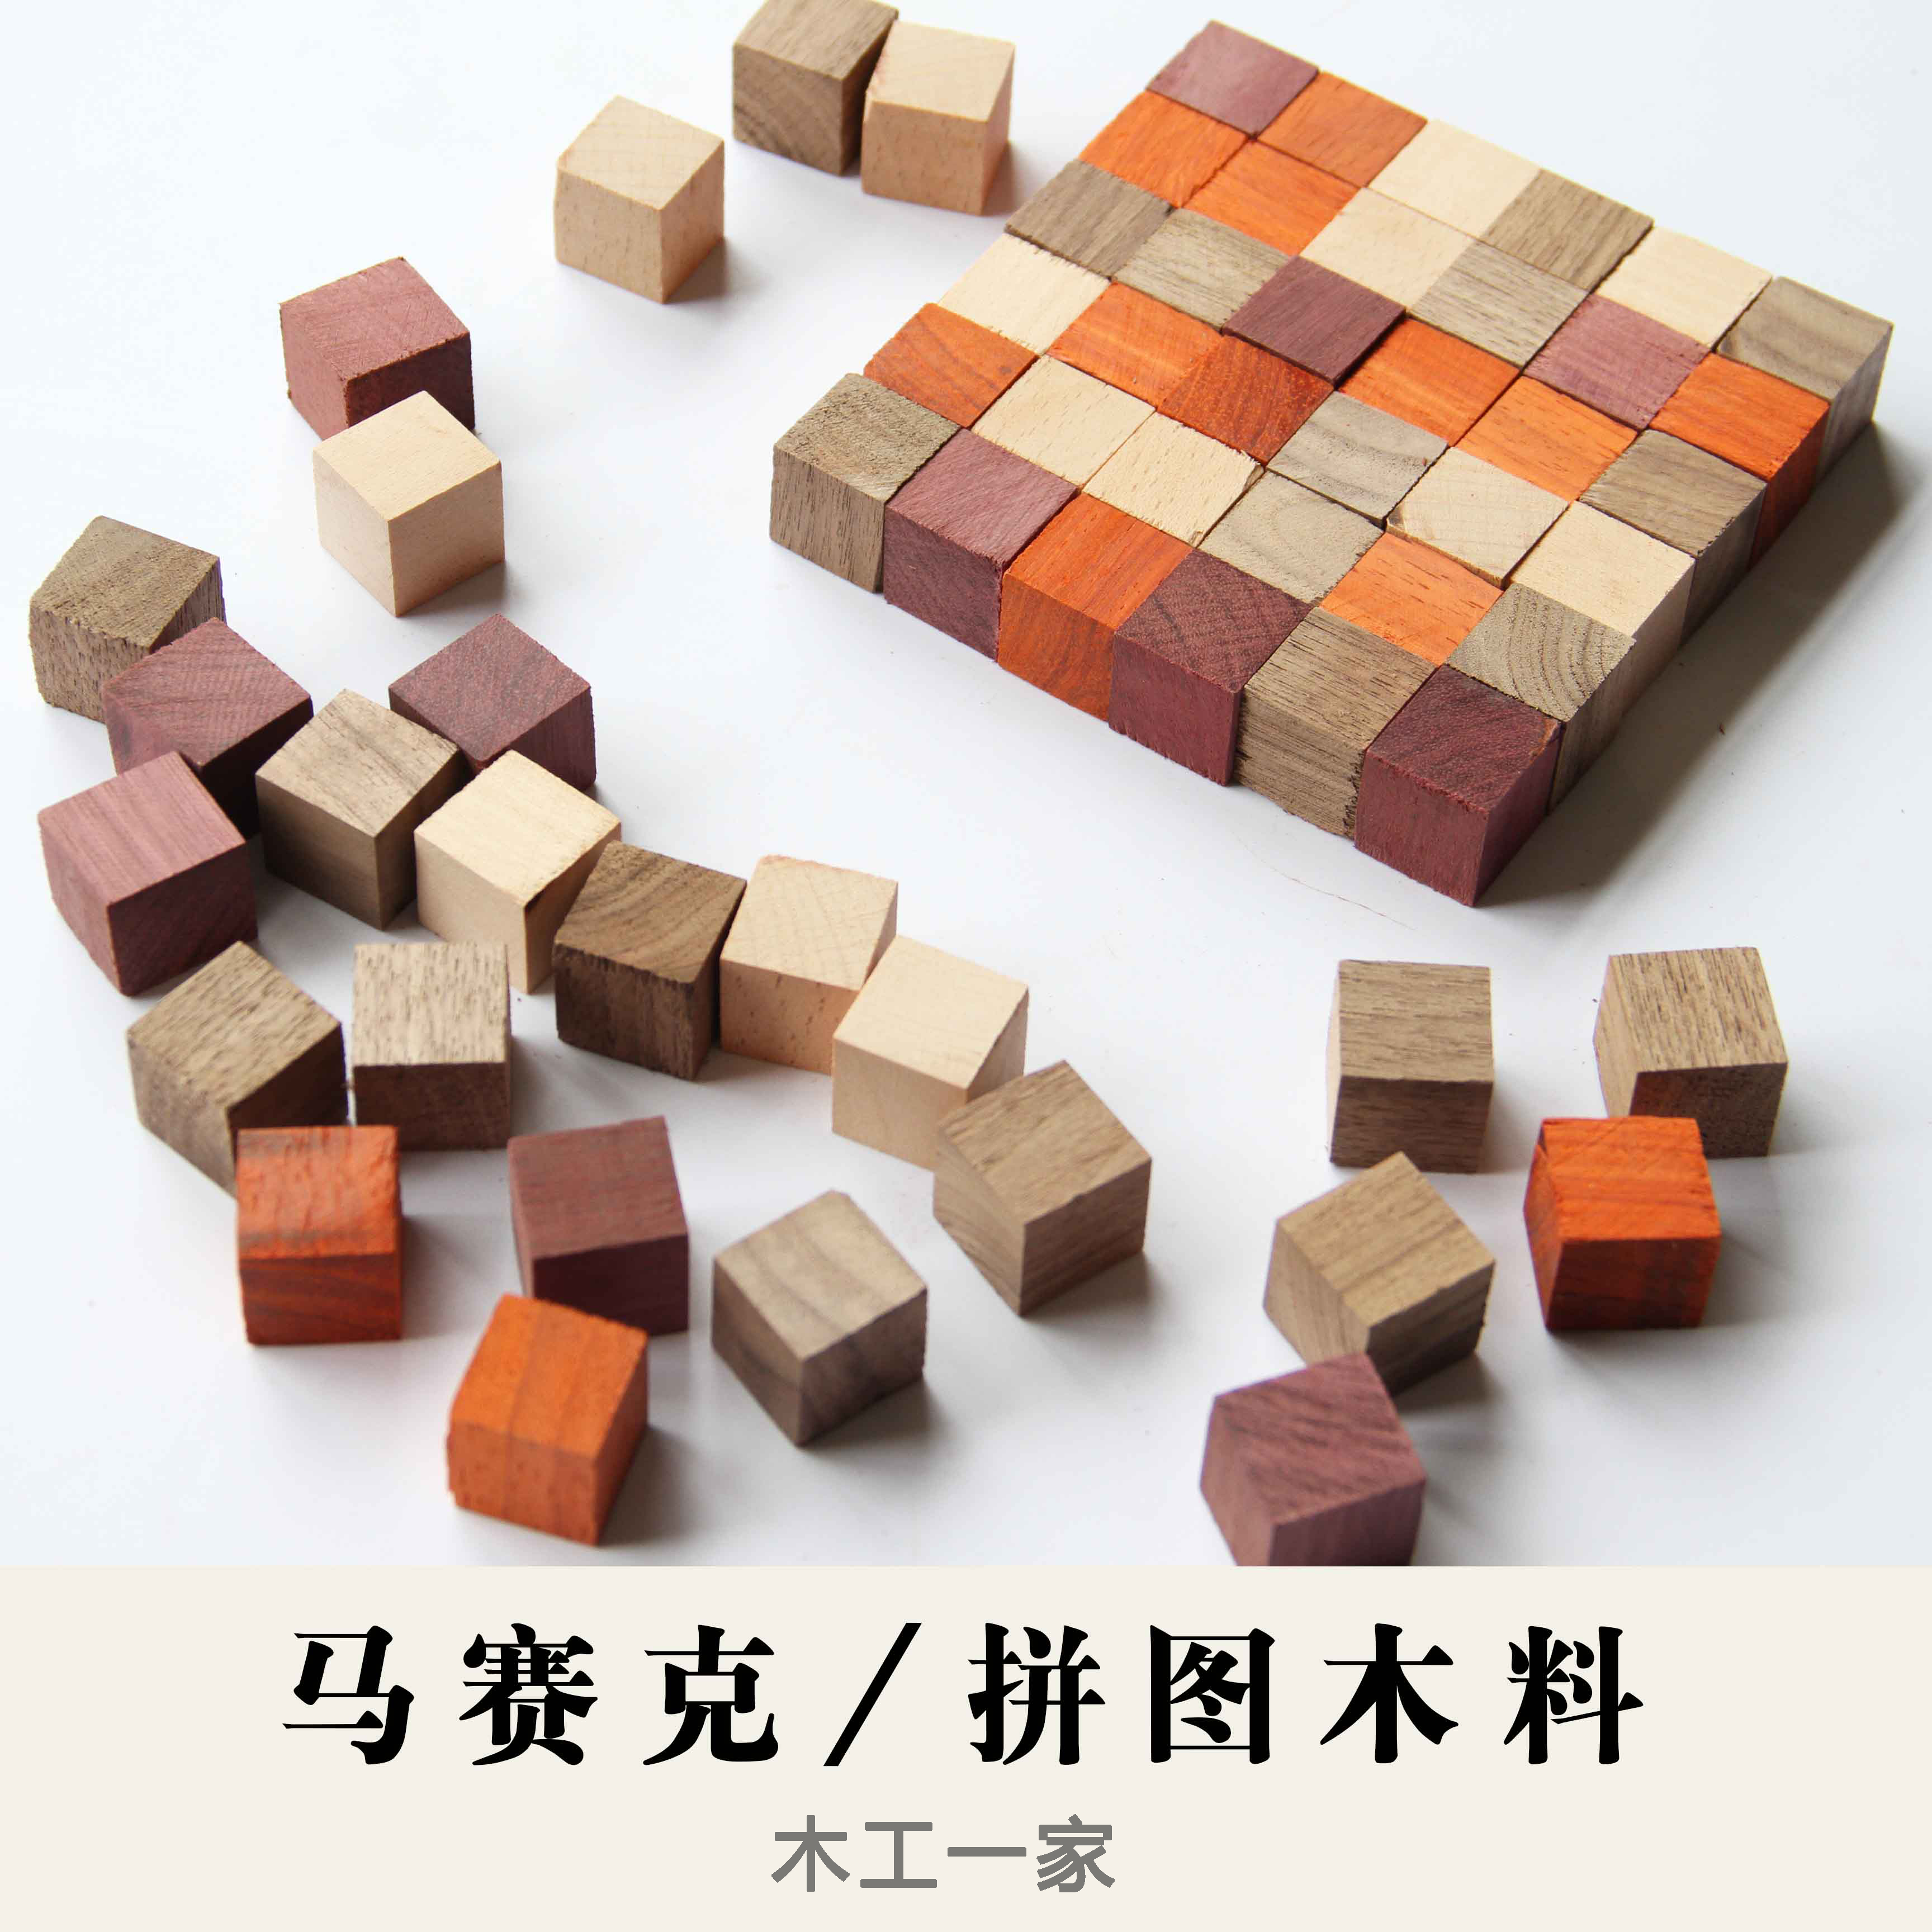 木料 黑胡桃紫光檀科檀榉木料2 拼图方块料 DIY小方块